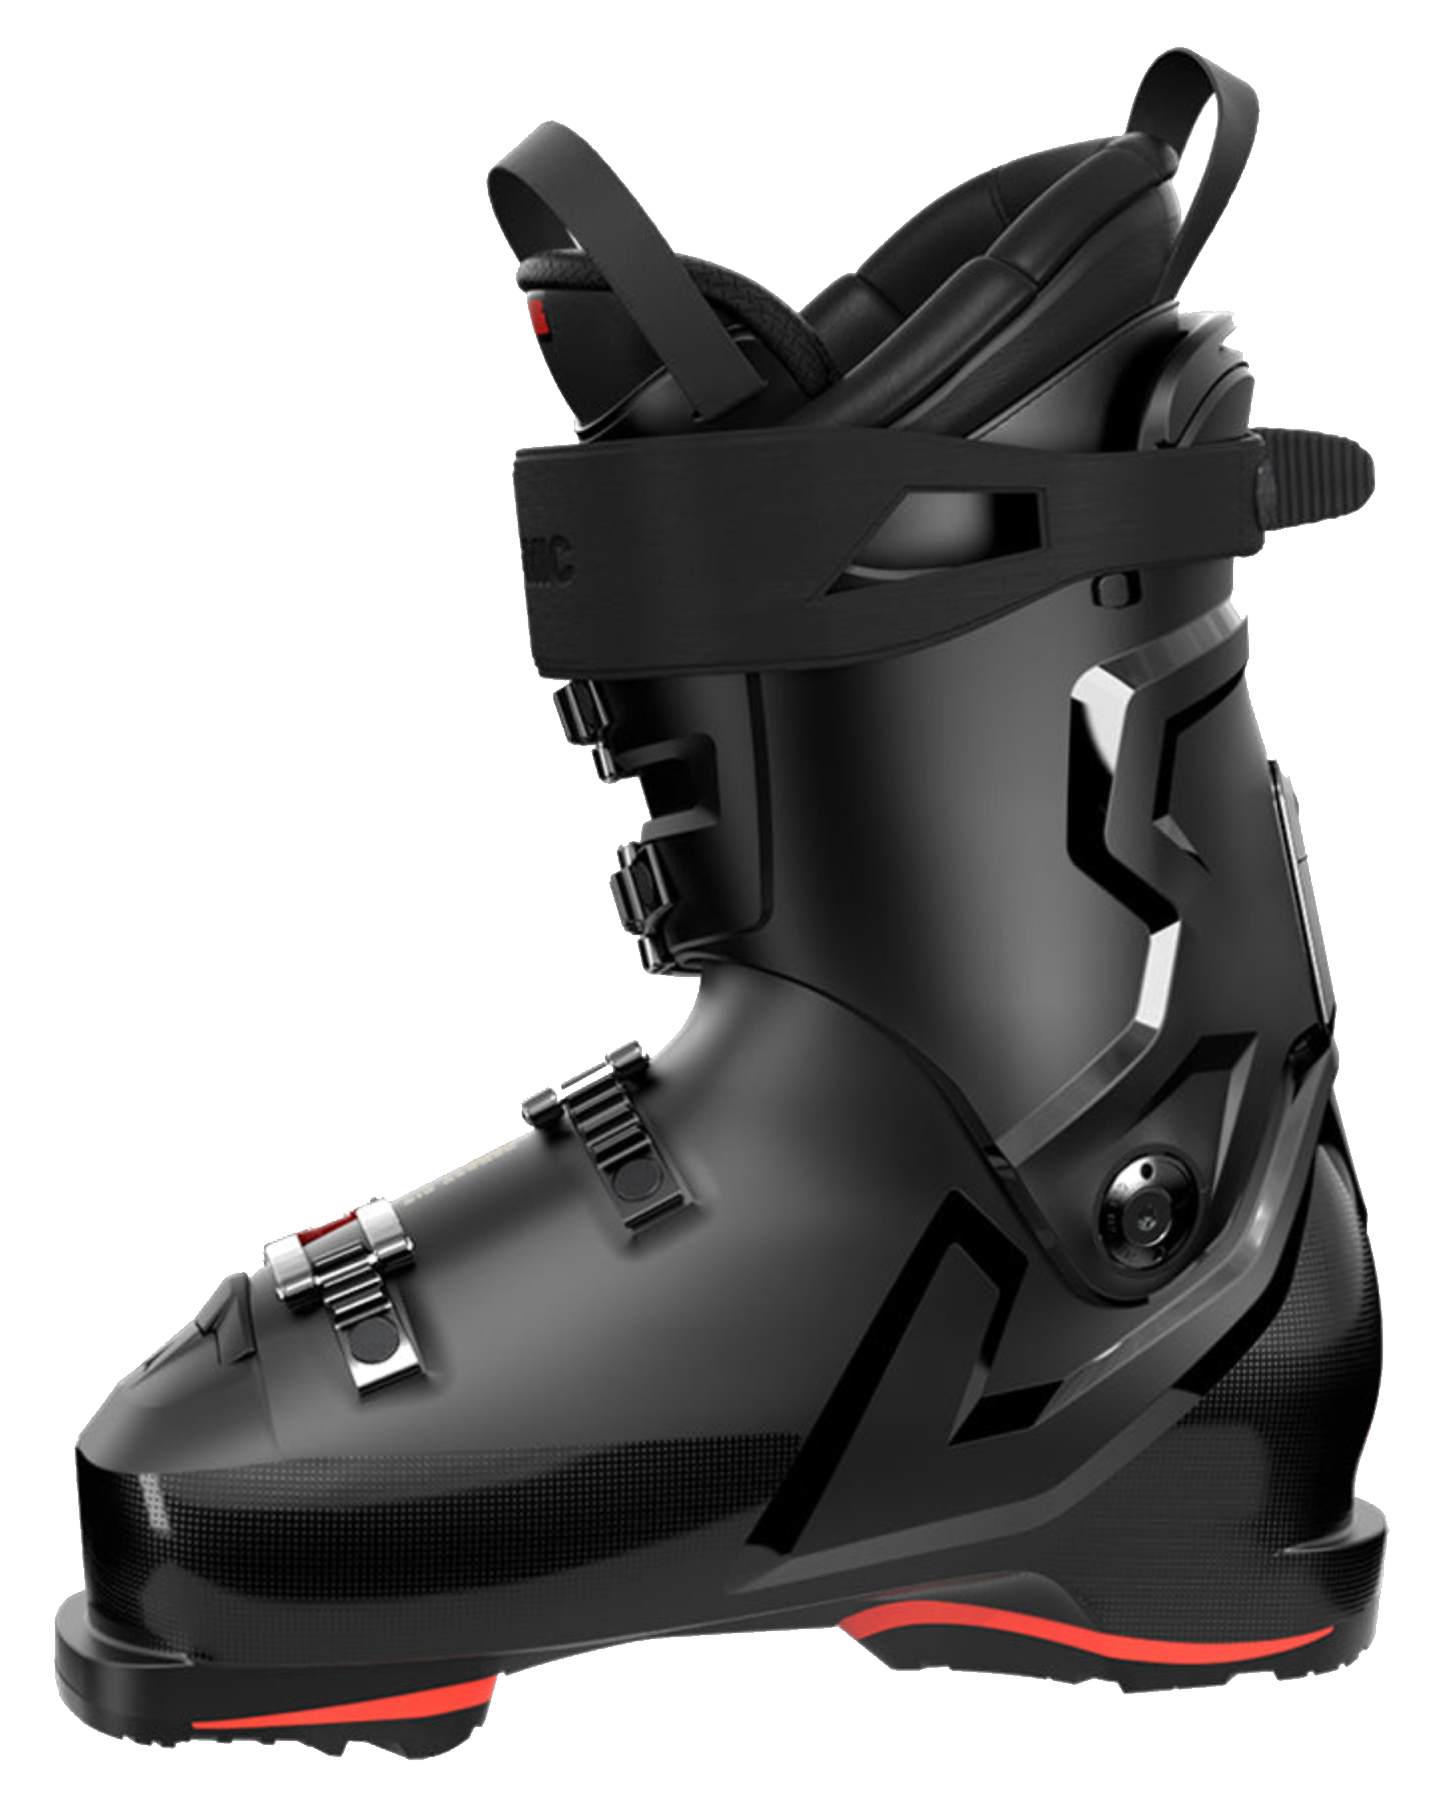 Atomic Hawx Magna 130 S Gw Ski Boots - Black - 2024 Snow Ski Boots - Mens - Trojan Wake Ski Snow